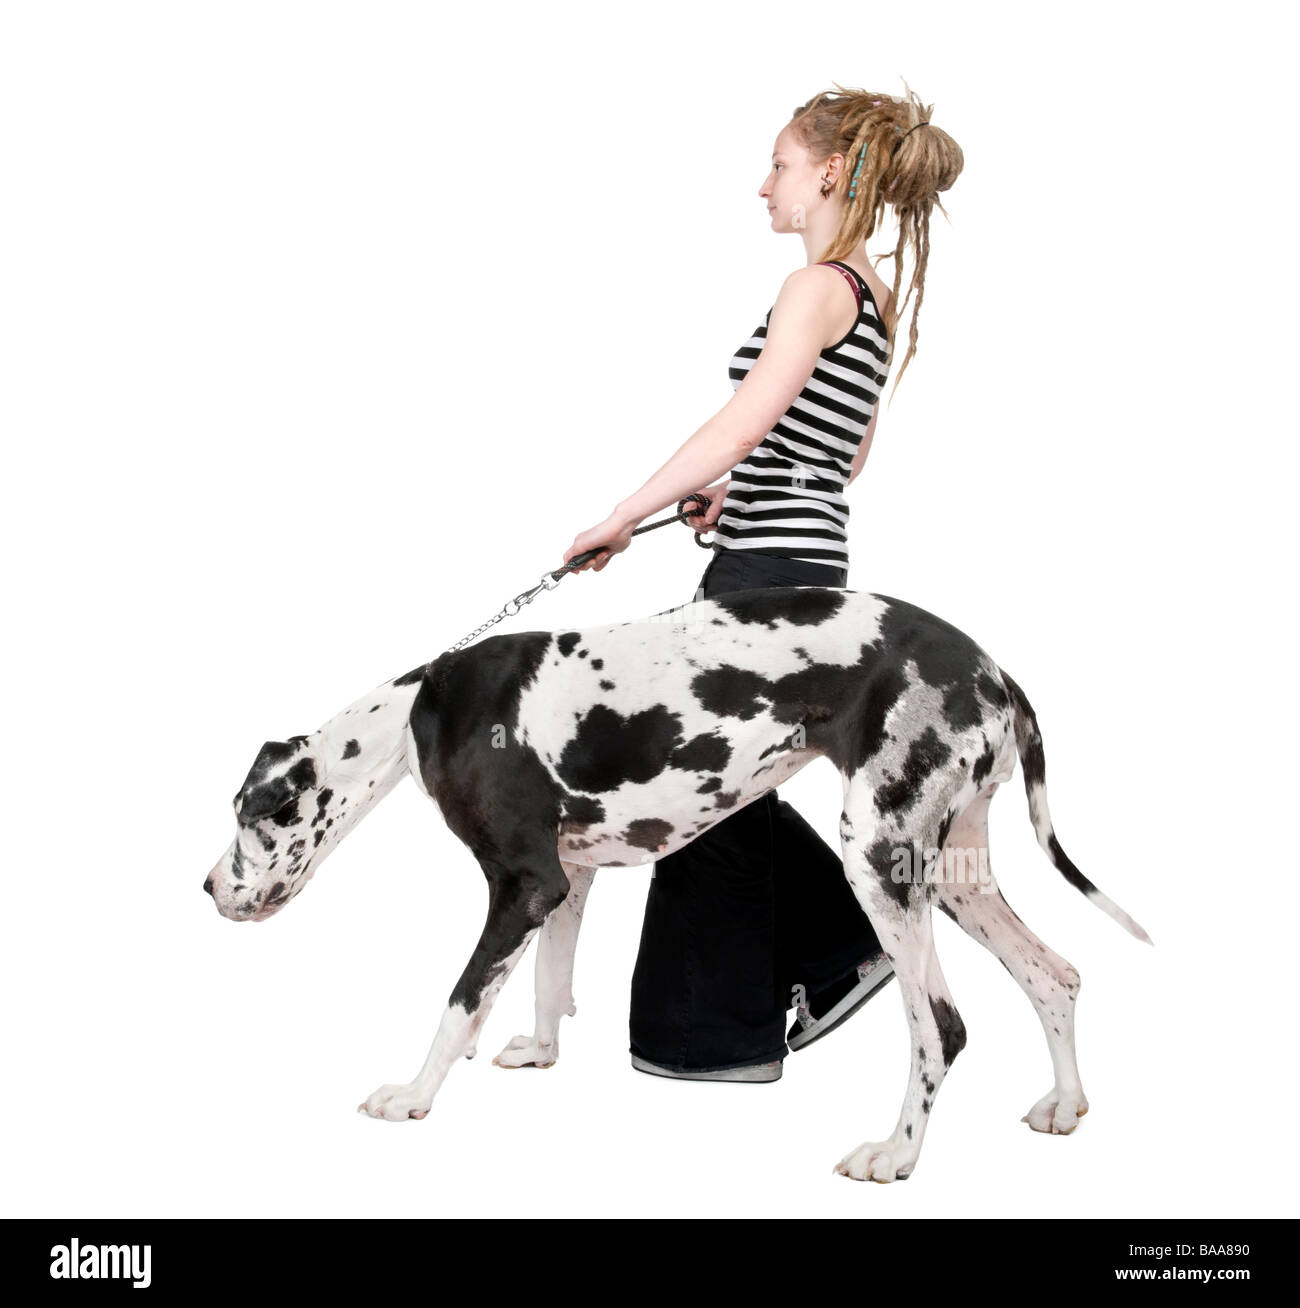 Jeune fille promener son chien dogue allemand arlequin 4 ans devant un fond blanc Banque D'Images